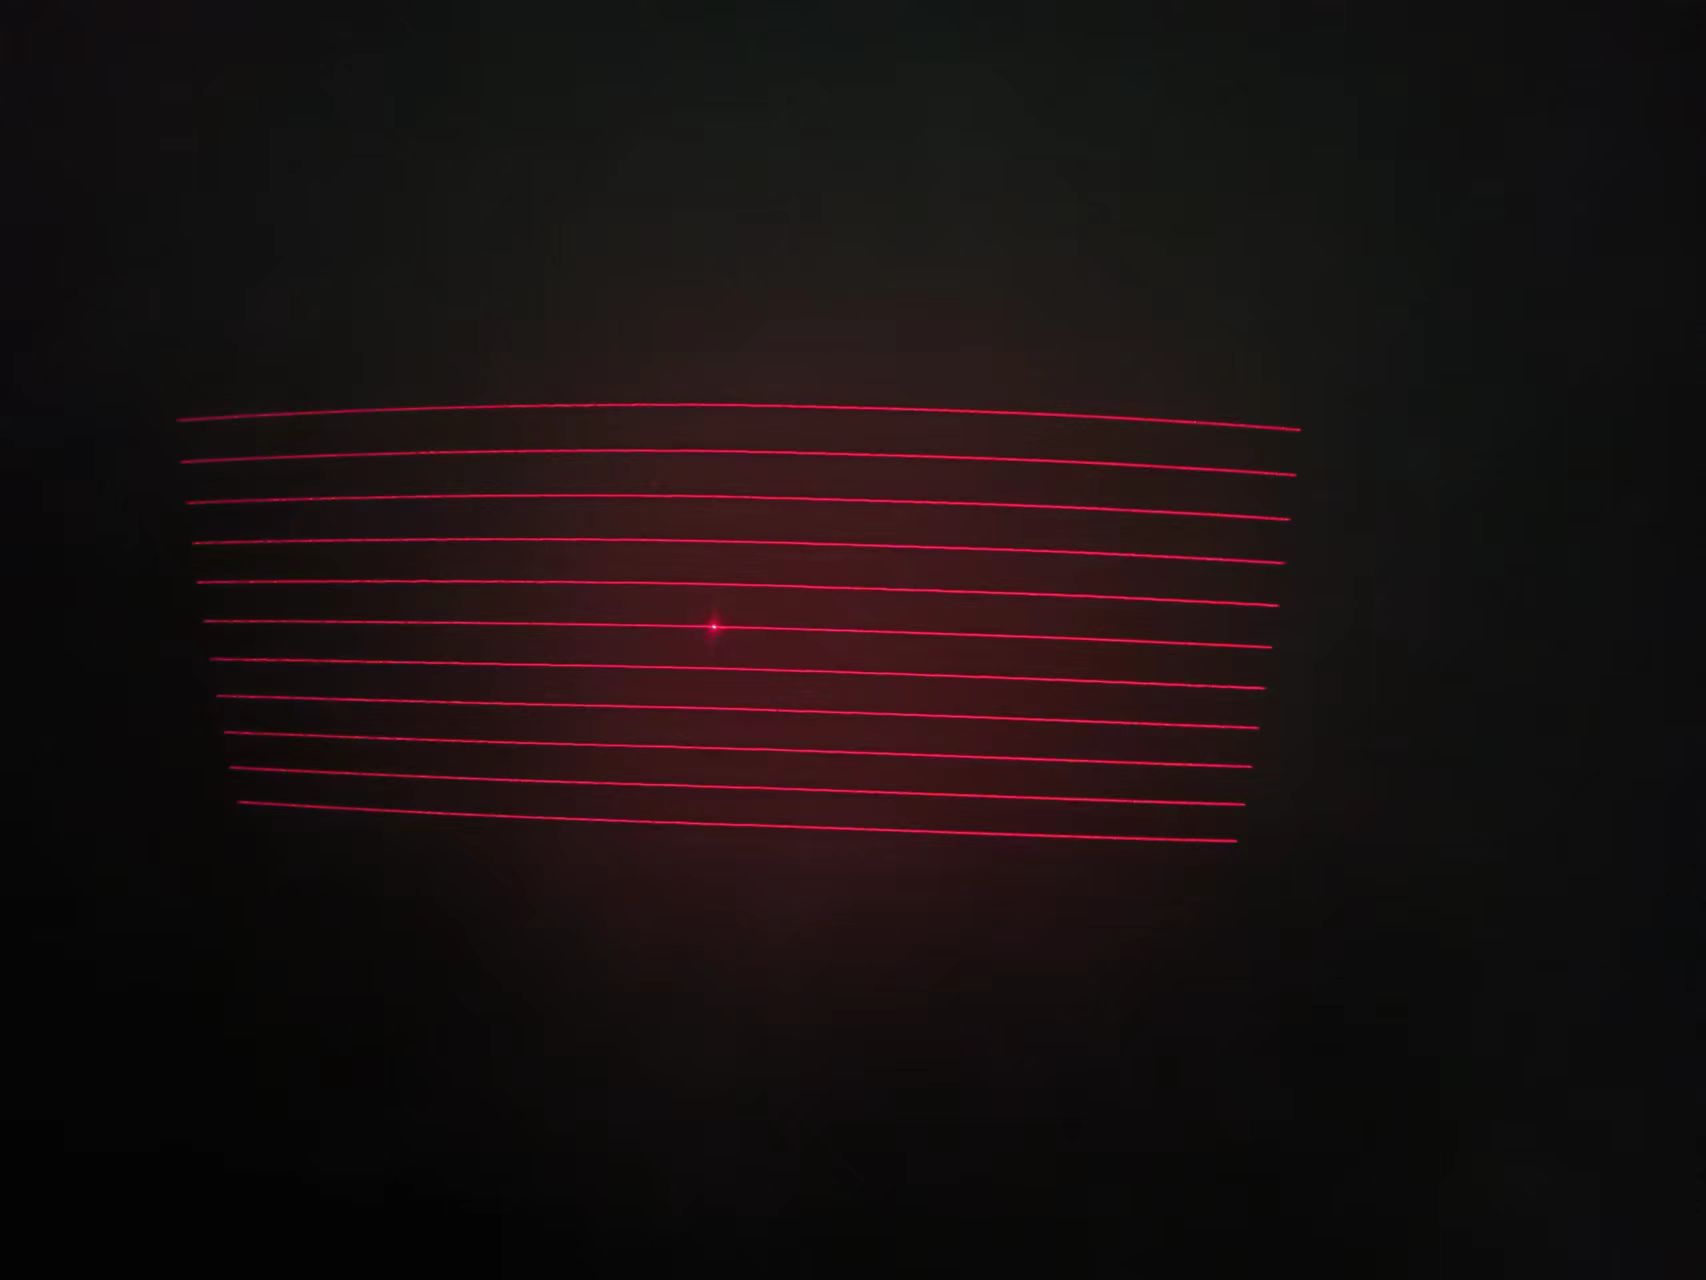  Line Laser/Structured Light